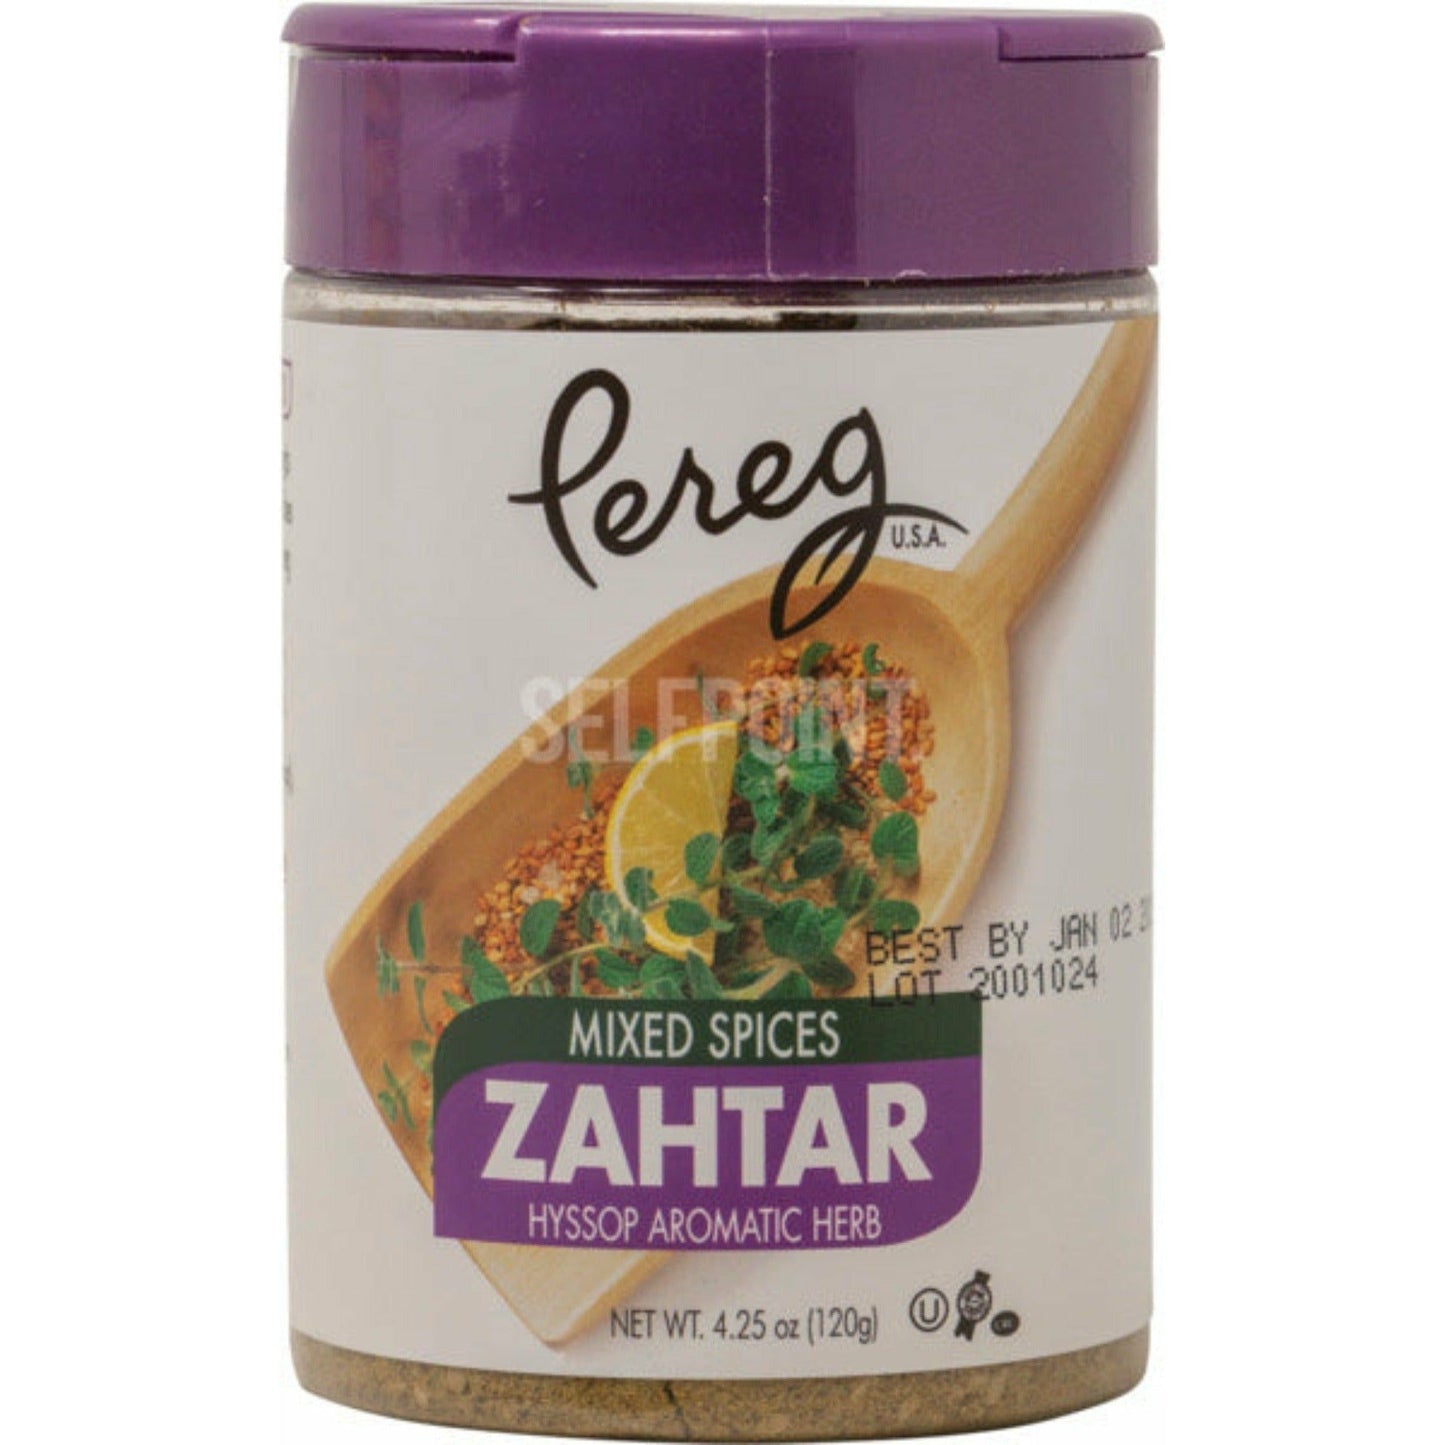 Pereg Mixed Spices Zahtar